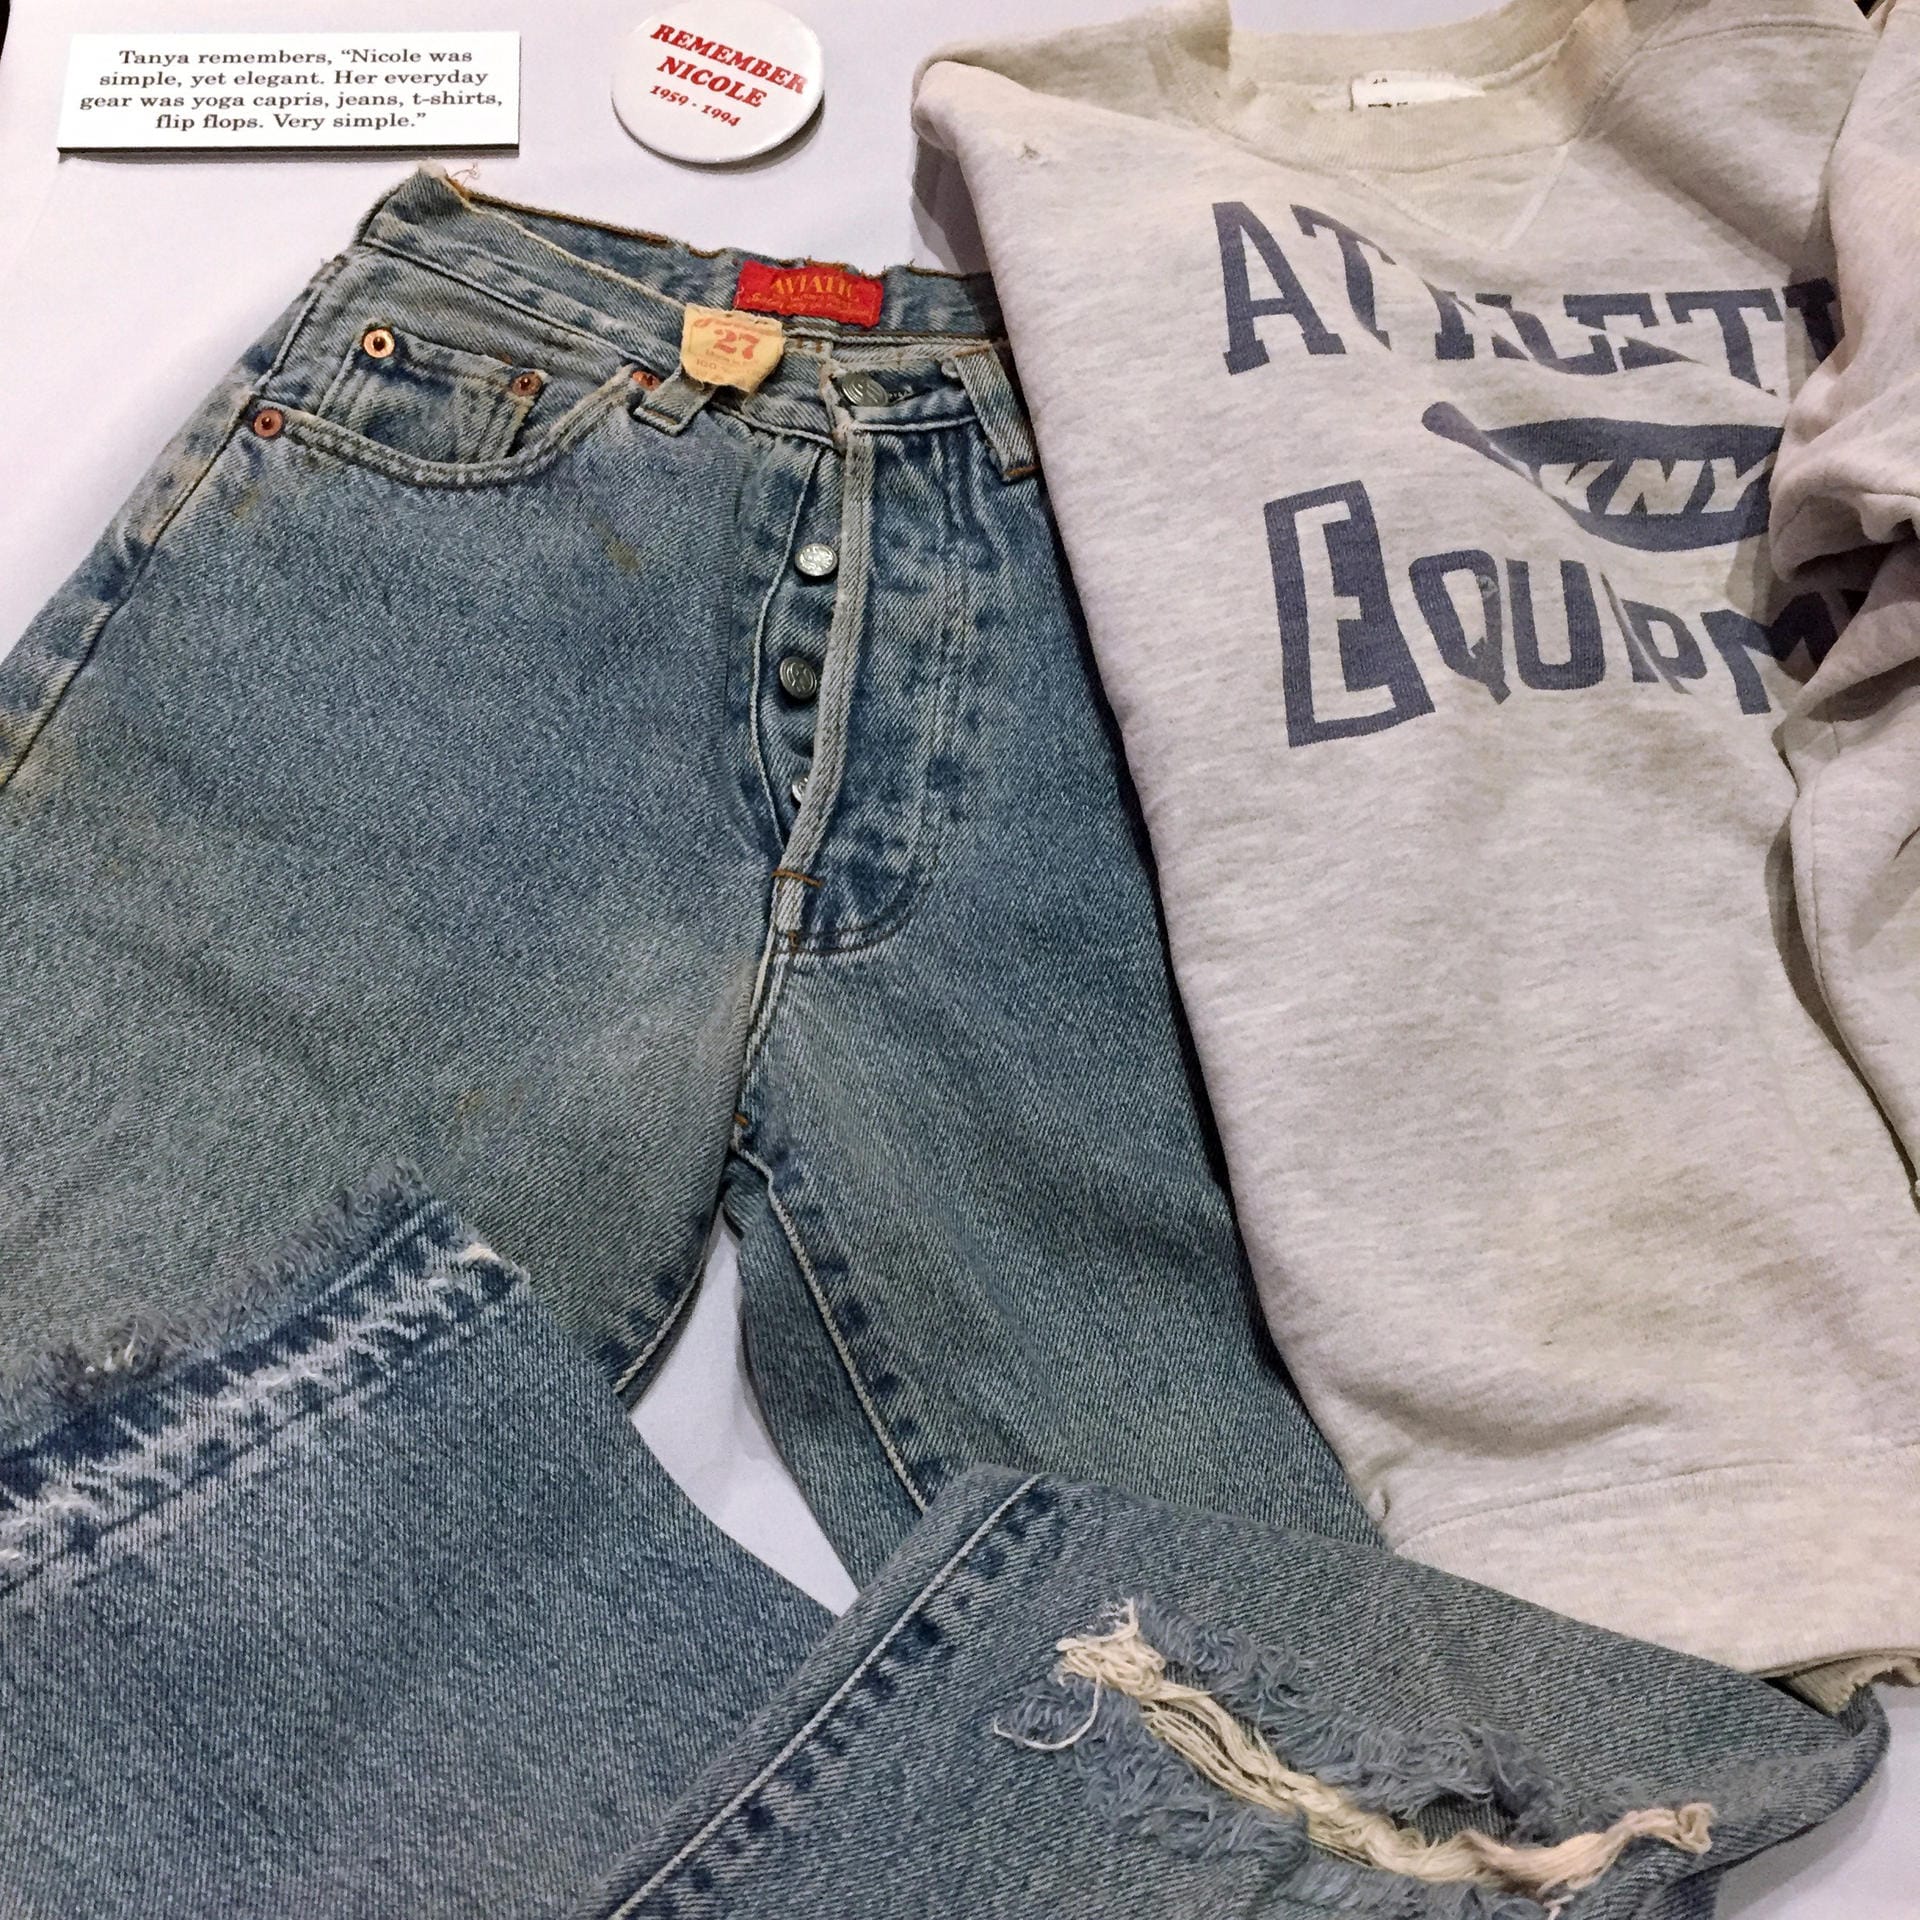 Auch Jeans und ein Sweatshirt von Nicole Brown Simpson sind in der Sonderausstellung ausgestellt. Die Ausstellung hat Tanya, eine Schwester Nicoles, konzipiert.